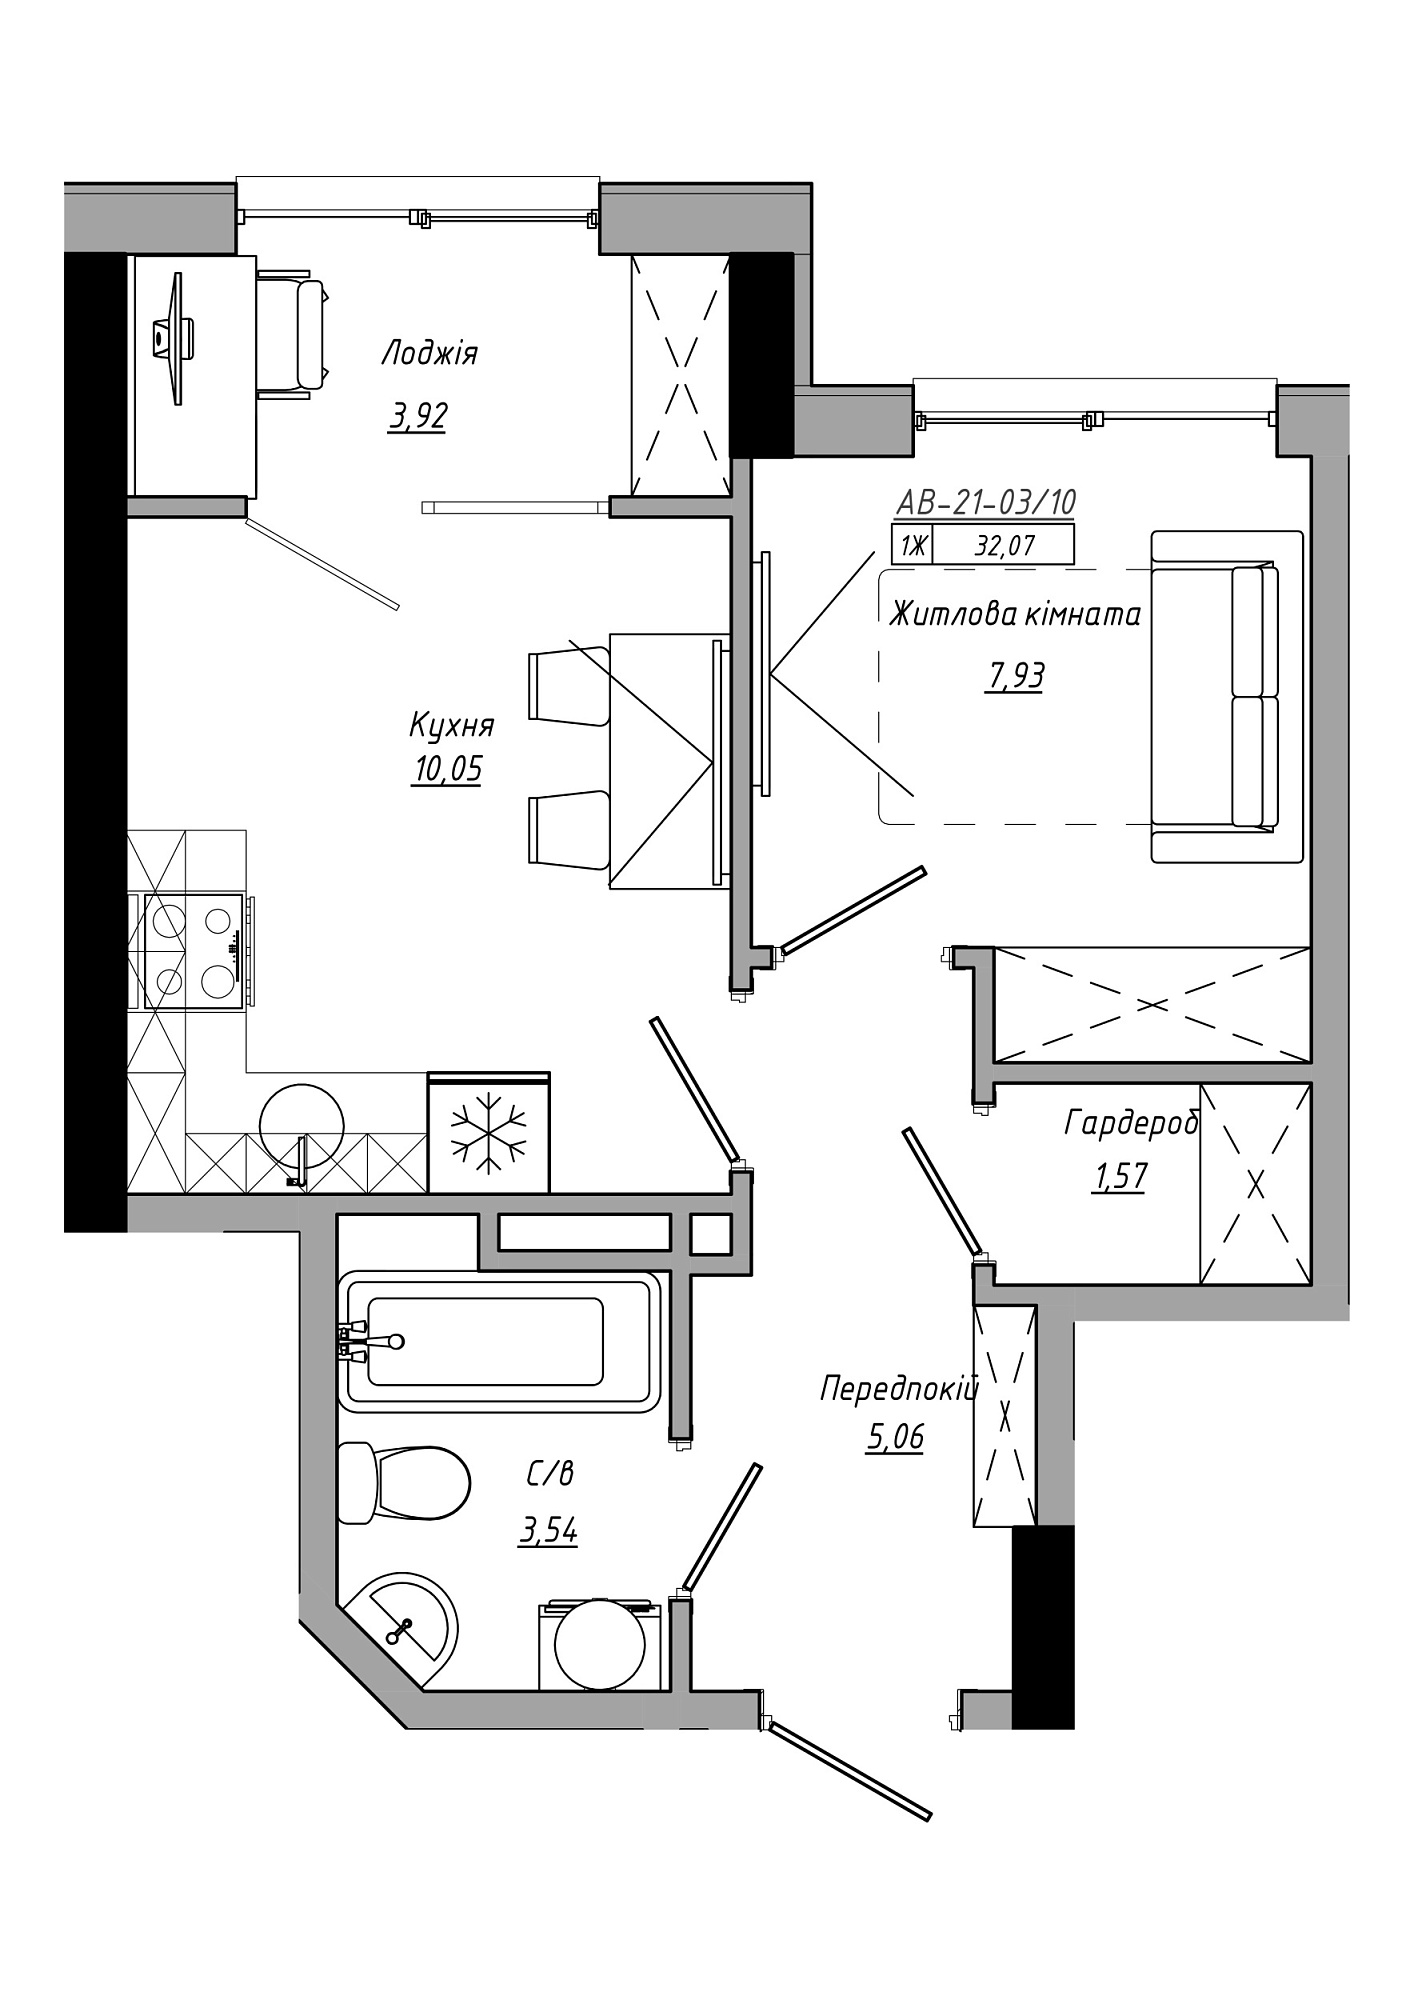 Планування 1-к квартира площею 32.07м2, AB-21-03/00010.